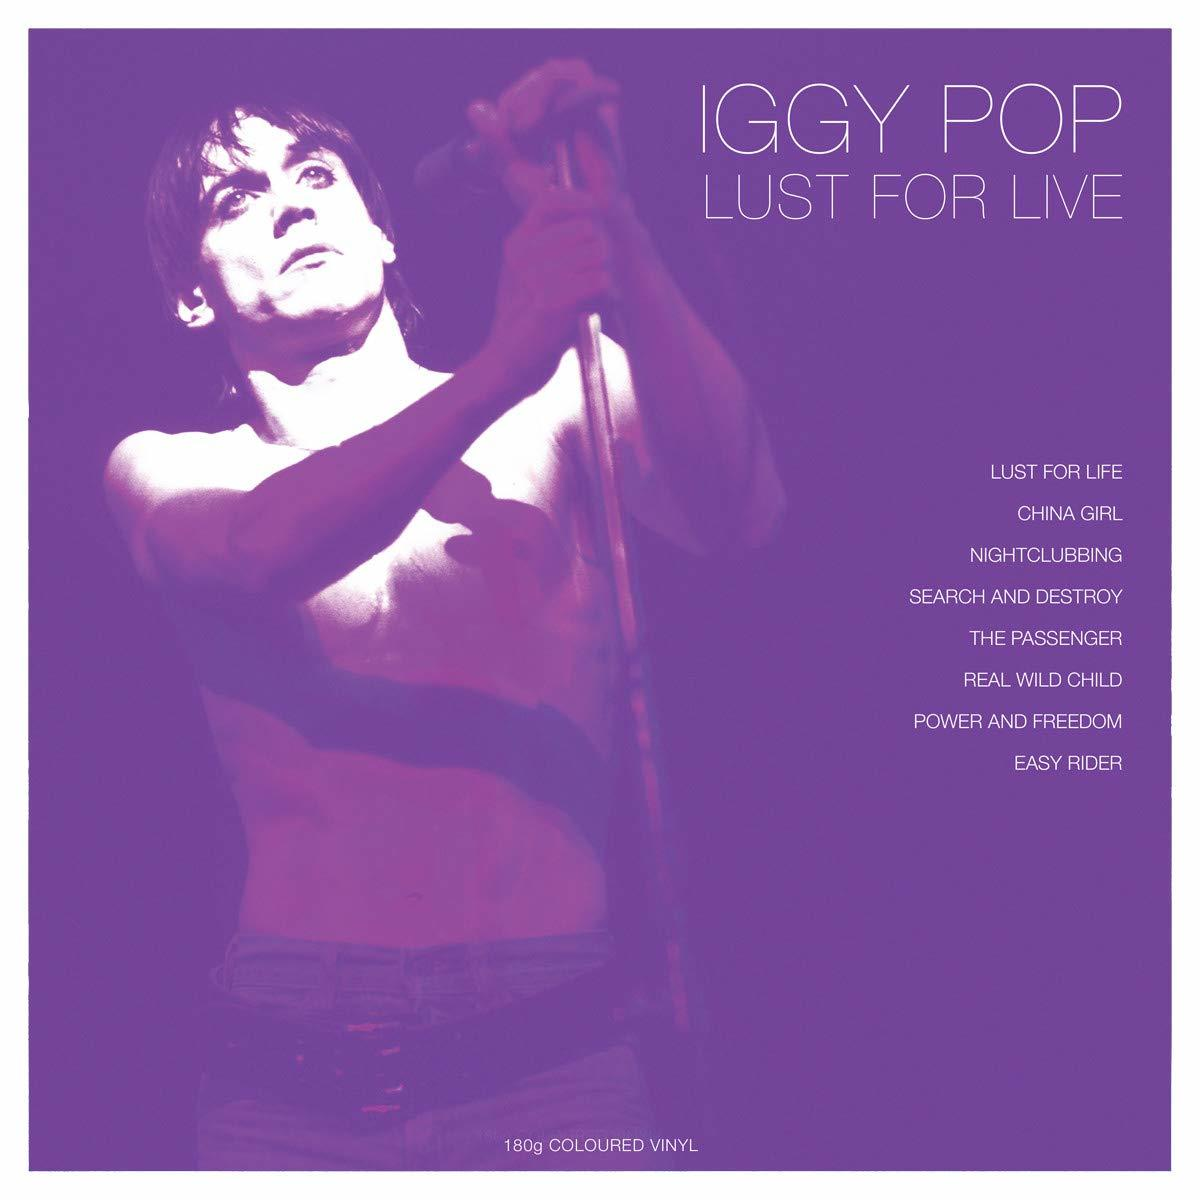 Lust Pop Live White Vinyl) Iggy (180g - (Vinyl) - For